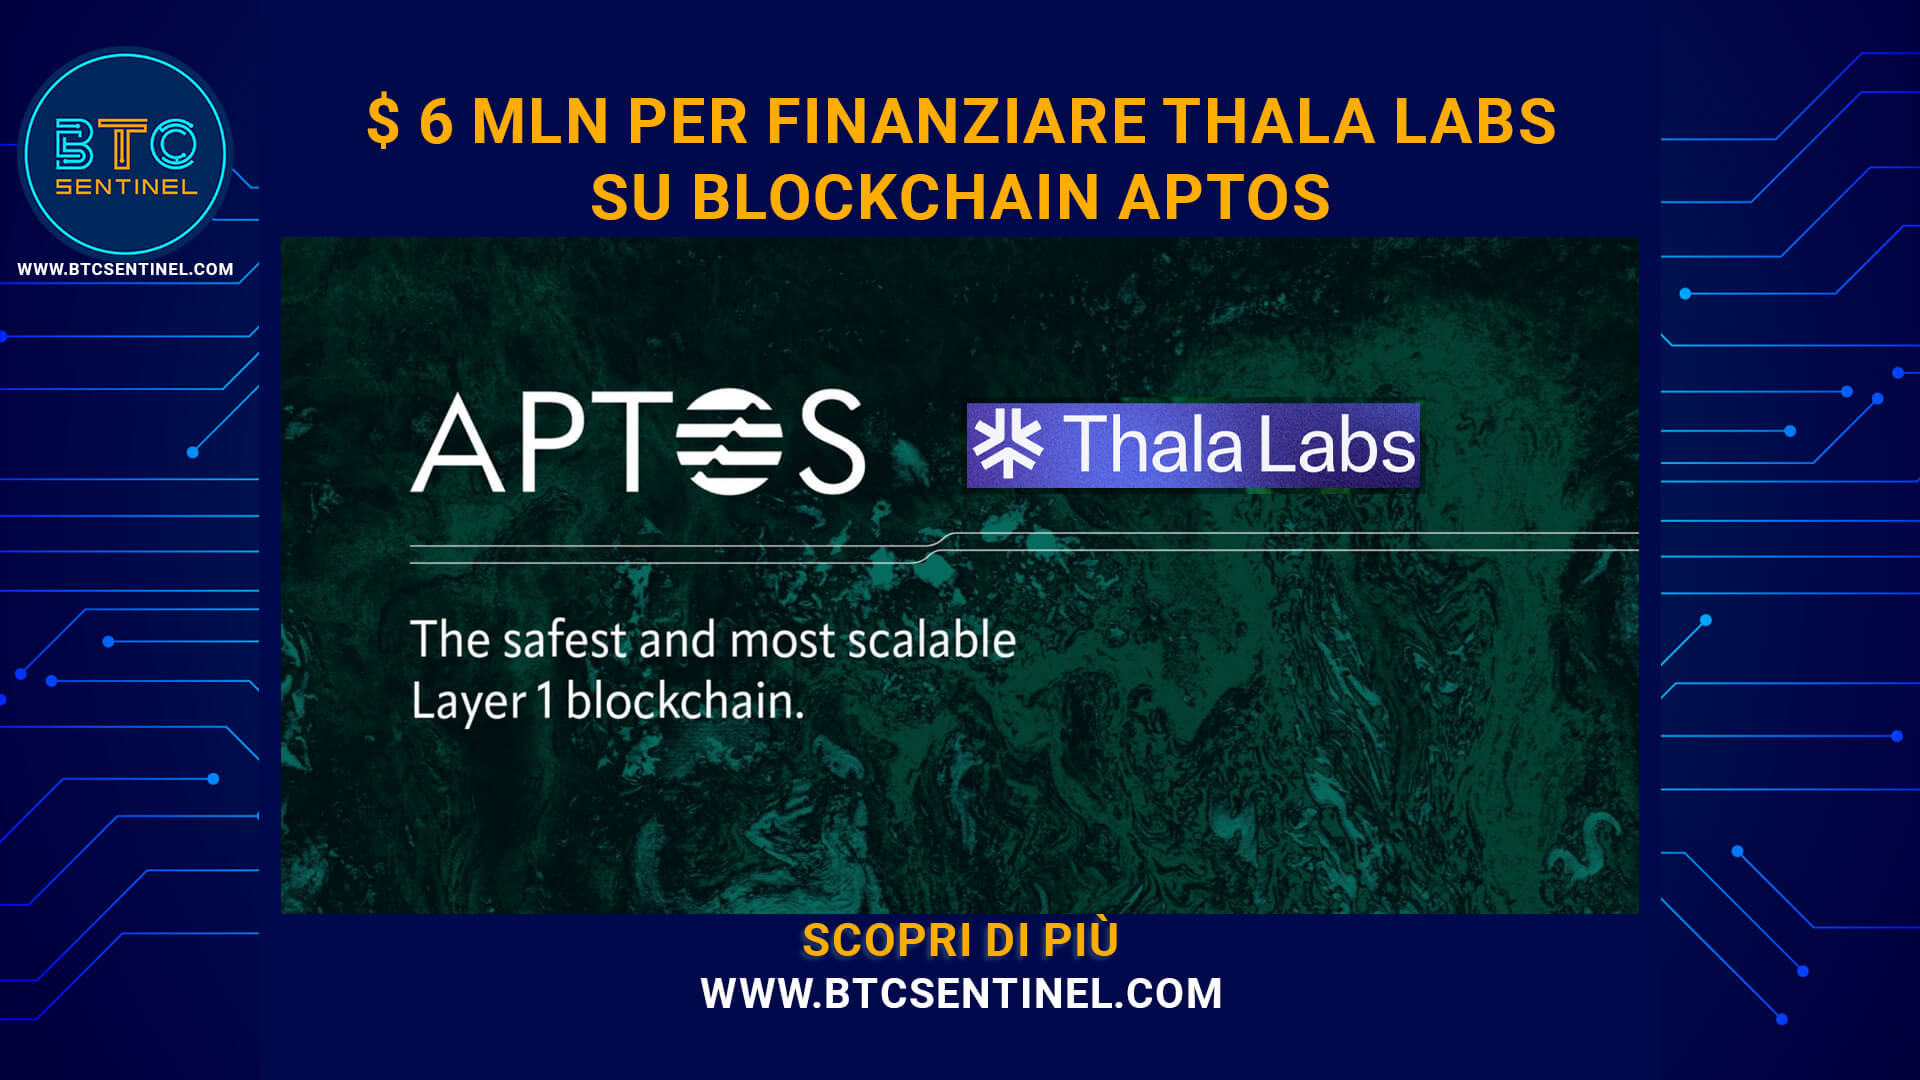 Finanziamento di $ 6 mln per Thala Labs e blockchain Aptos